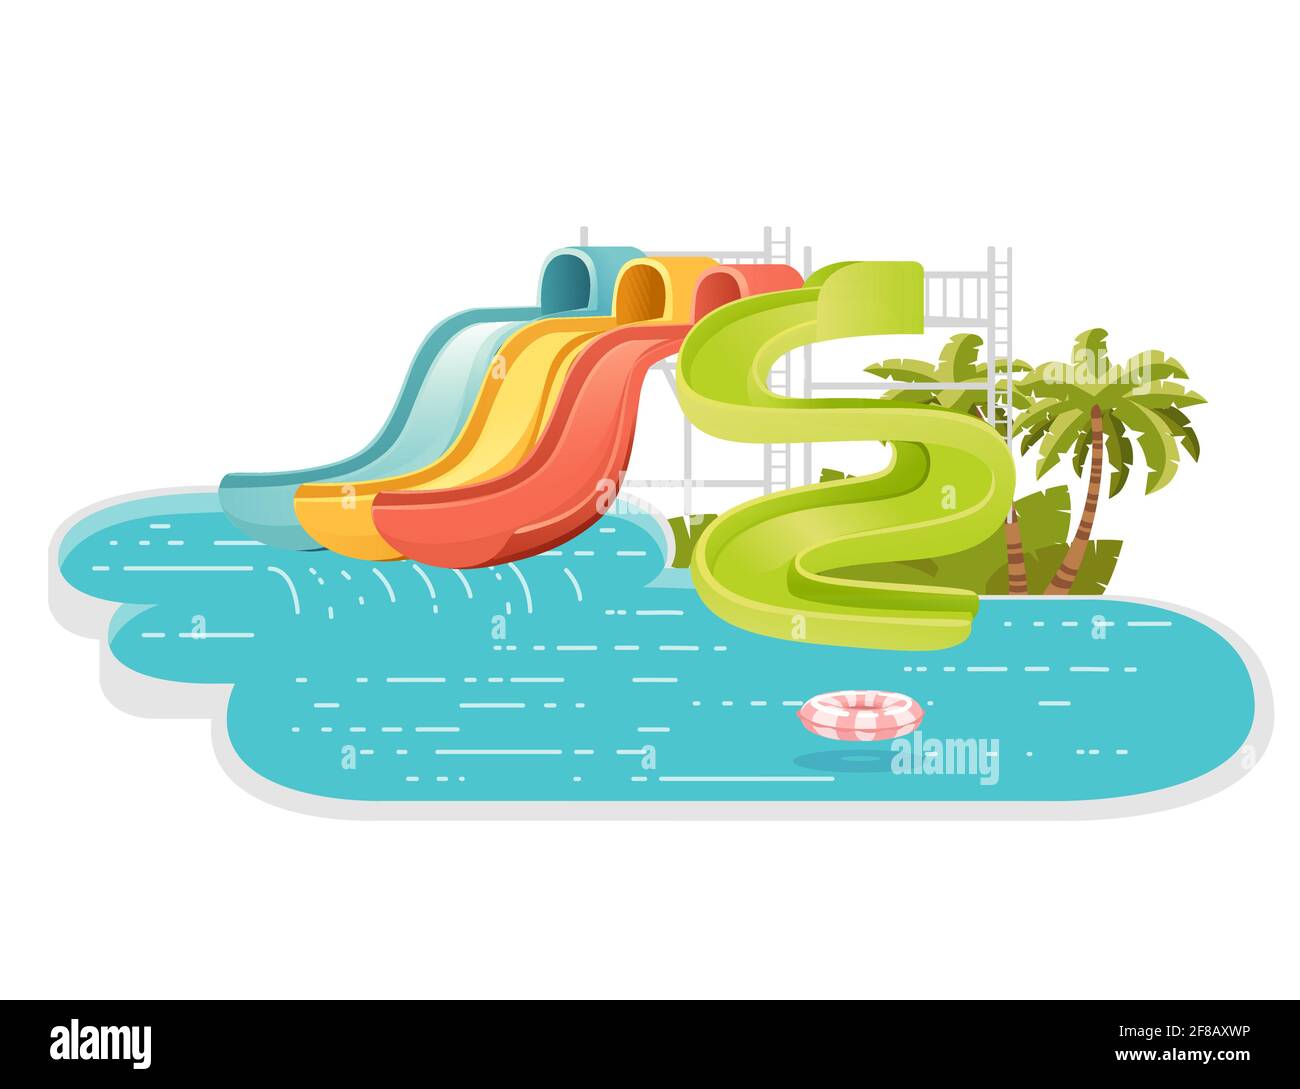 Waterpark-Illustration mit farbigen Kunststoff-Schraubrutschen und Pool mit Palme auf dem Ufer Vektor-Illustration auf weißem Hintergrund Stock Vektor